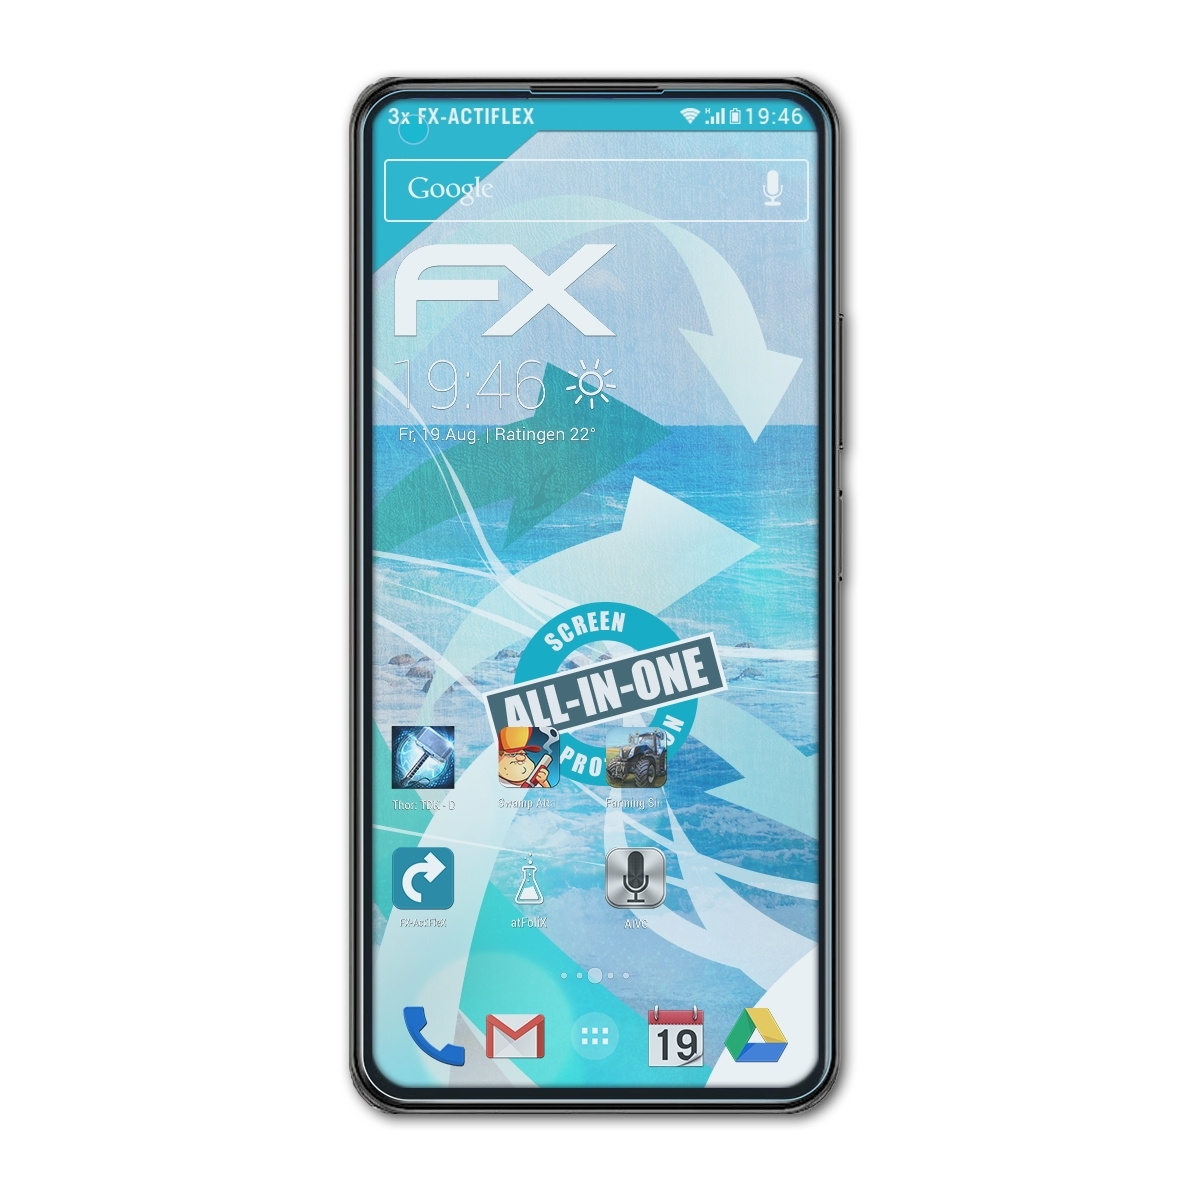 11 3x FX-ActiFleX Lite ATFOLIX Displayschutz(für 5G) Mi Xiaomi